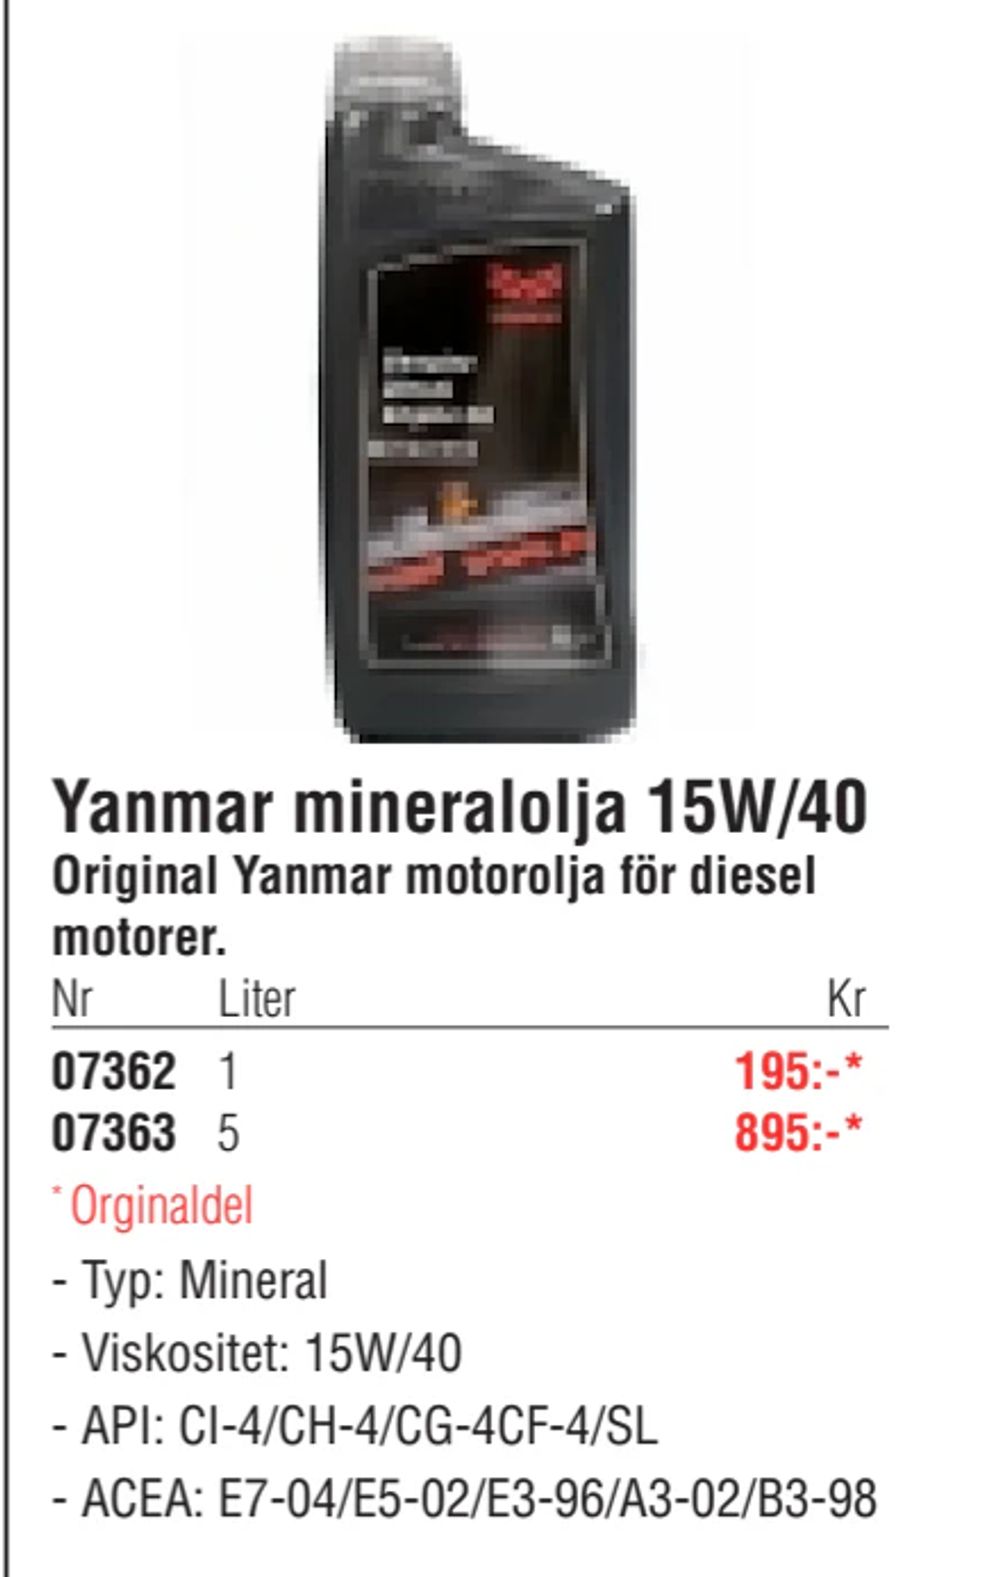 Erbjudanden på Yanmar mineralolja 15W/40 från Erlandsons Brygga för 195 kr